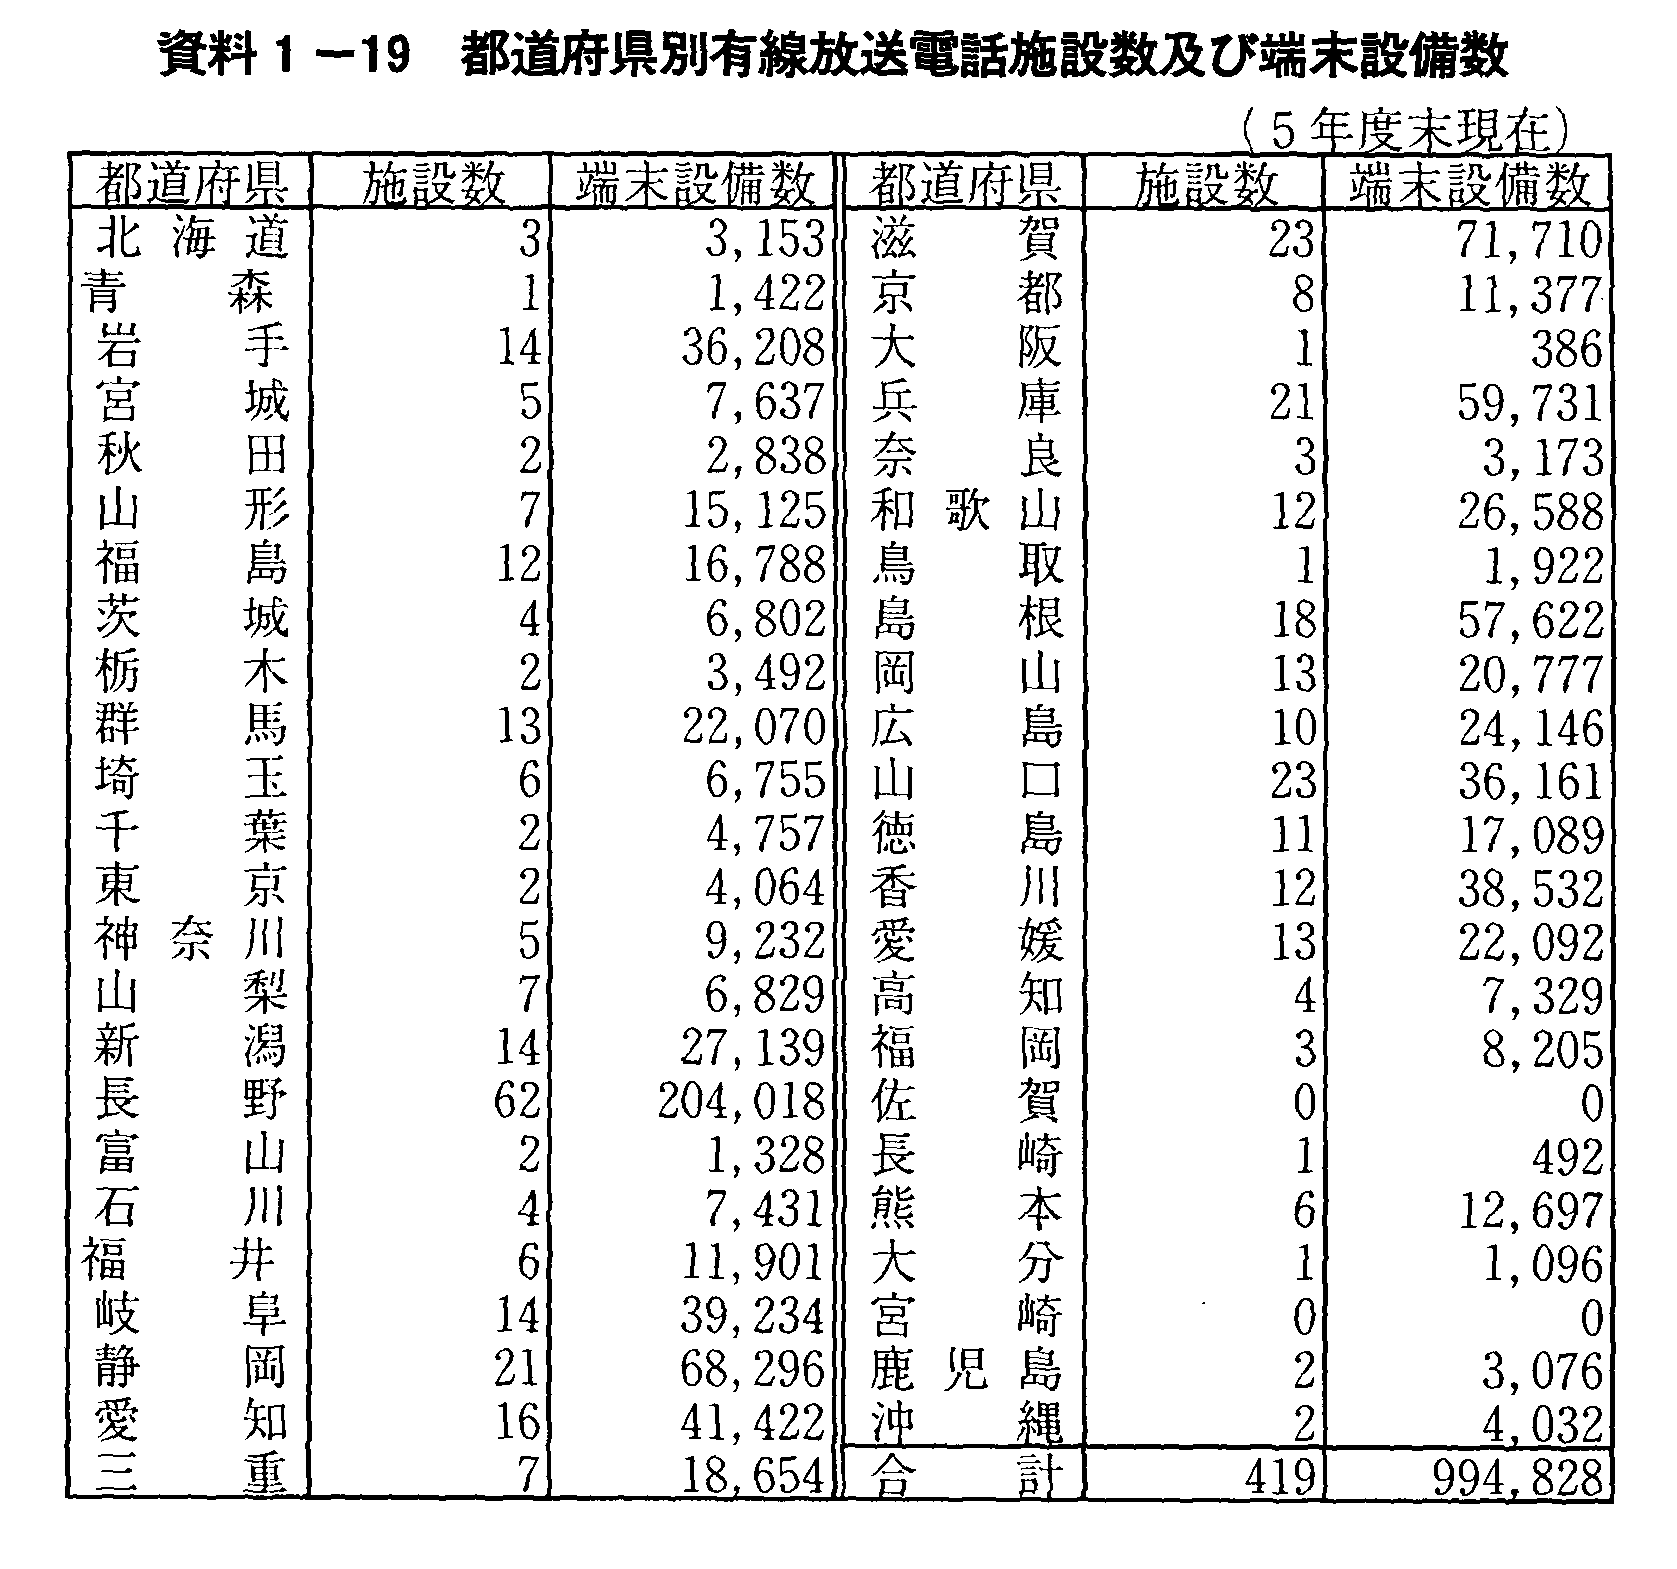 資料1-19 都道府県別有線放送電話施設数及び端末設備数(5年度末現在)